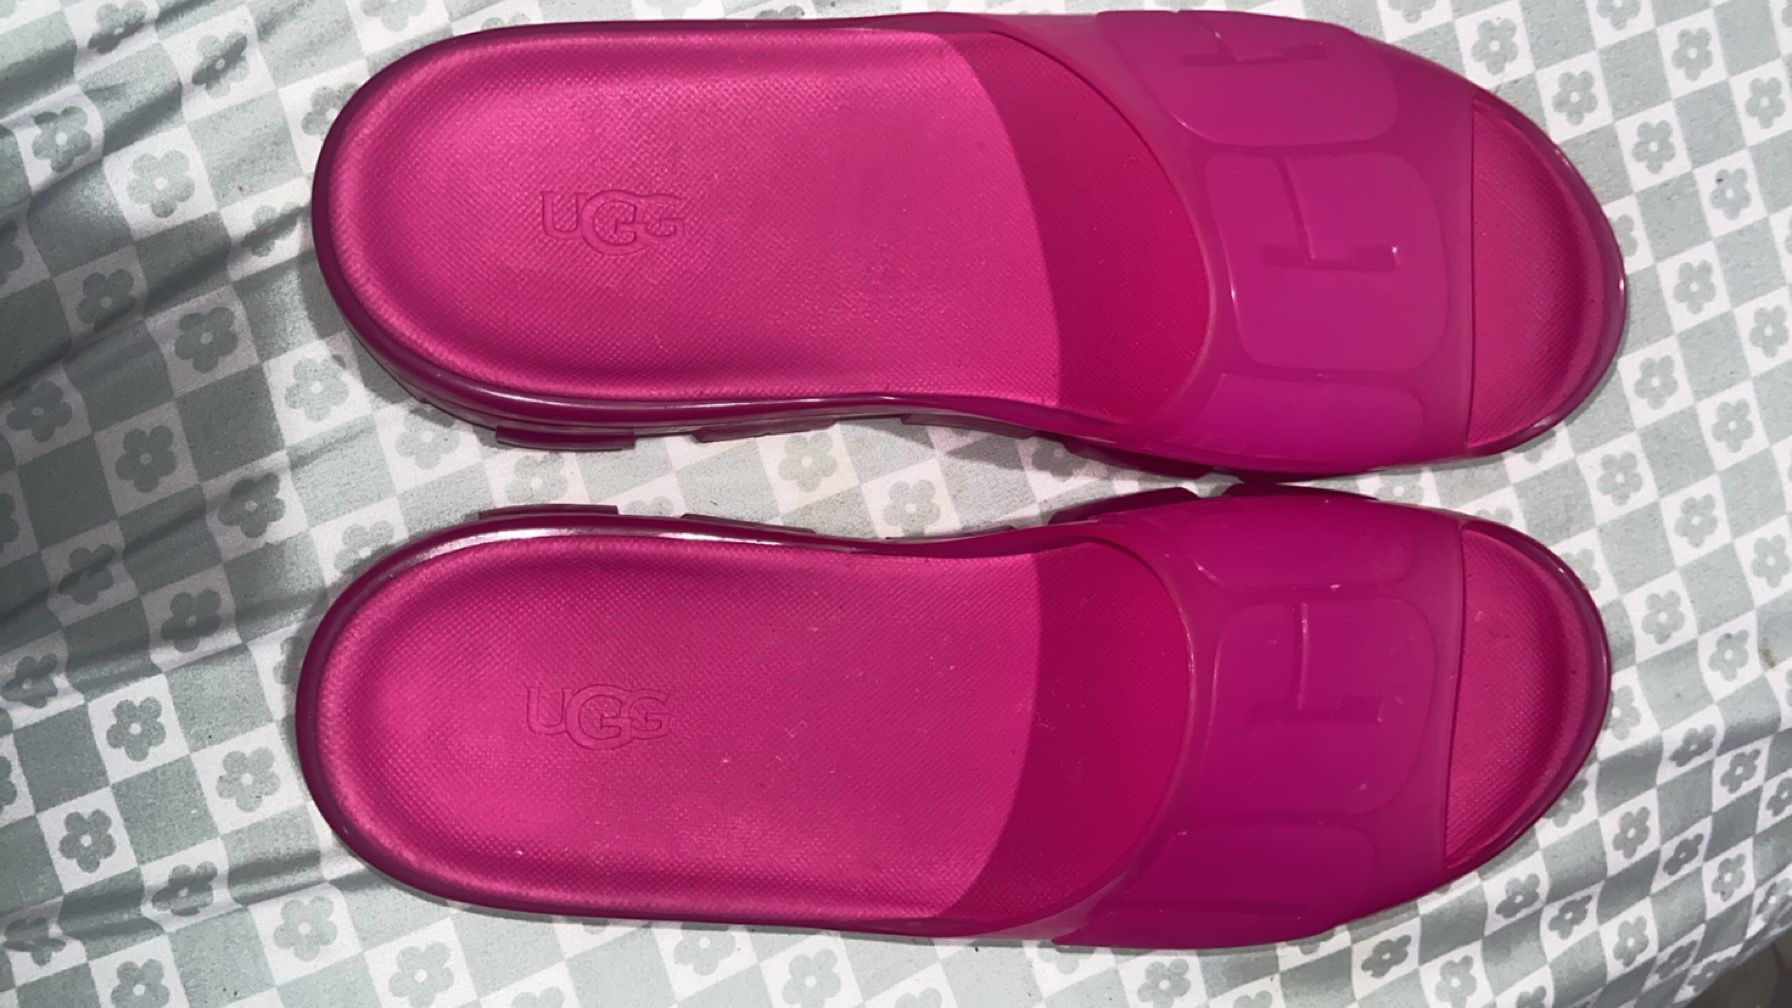 Ugg Wedges/ Slides Hot Pink Size 8